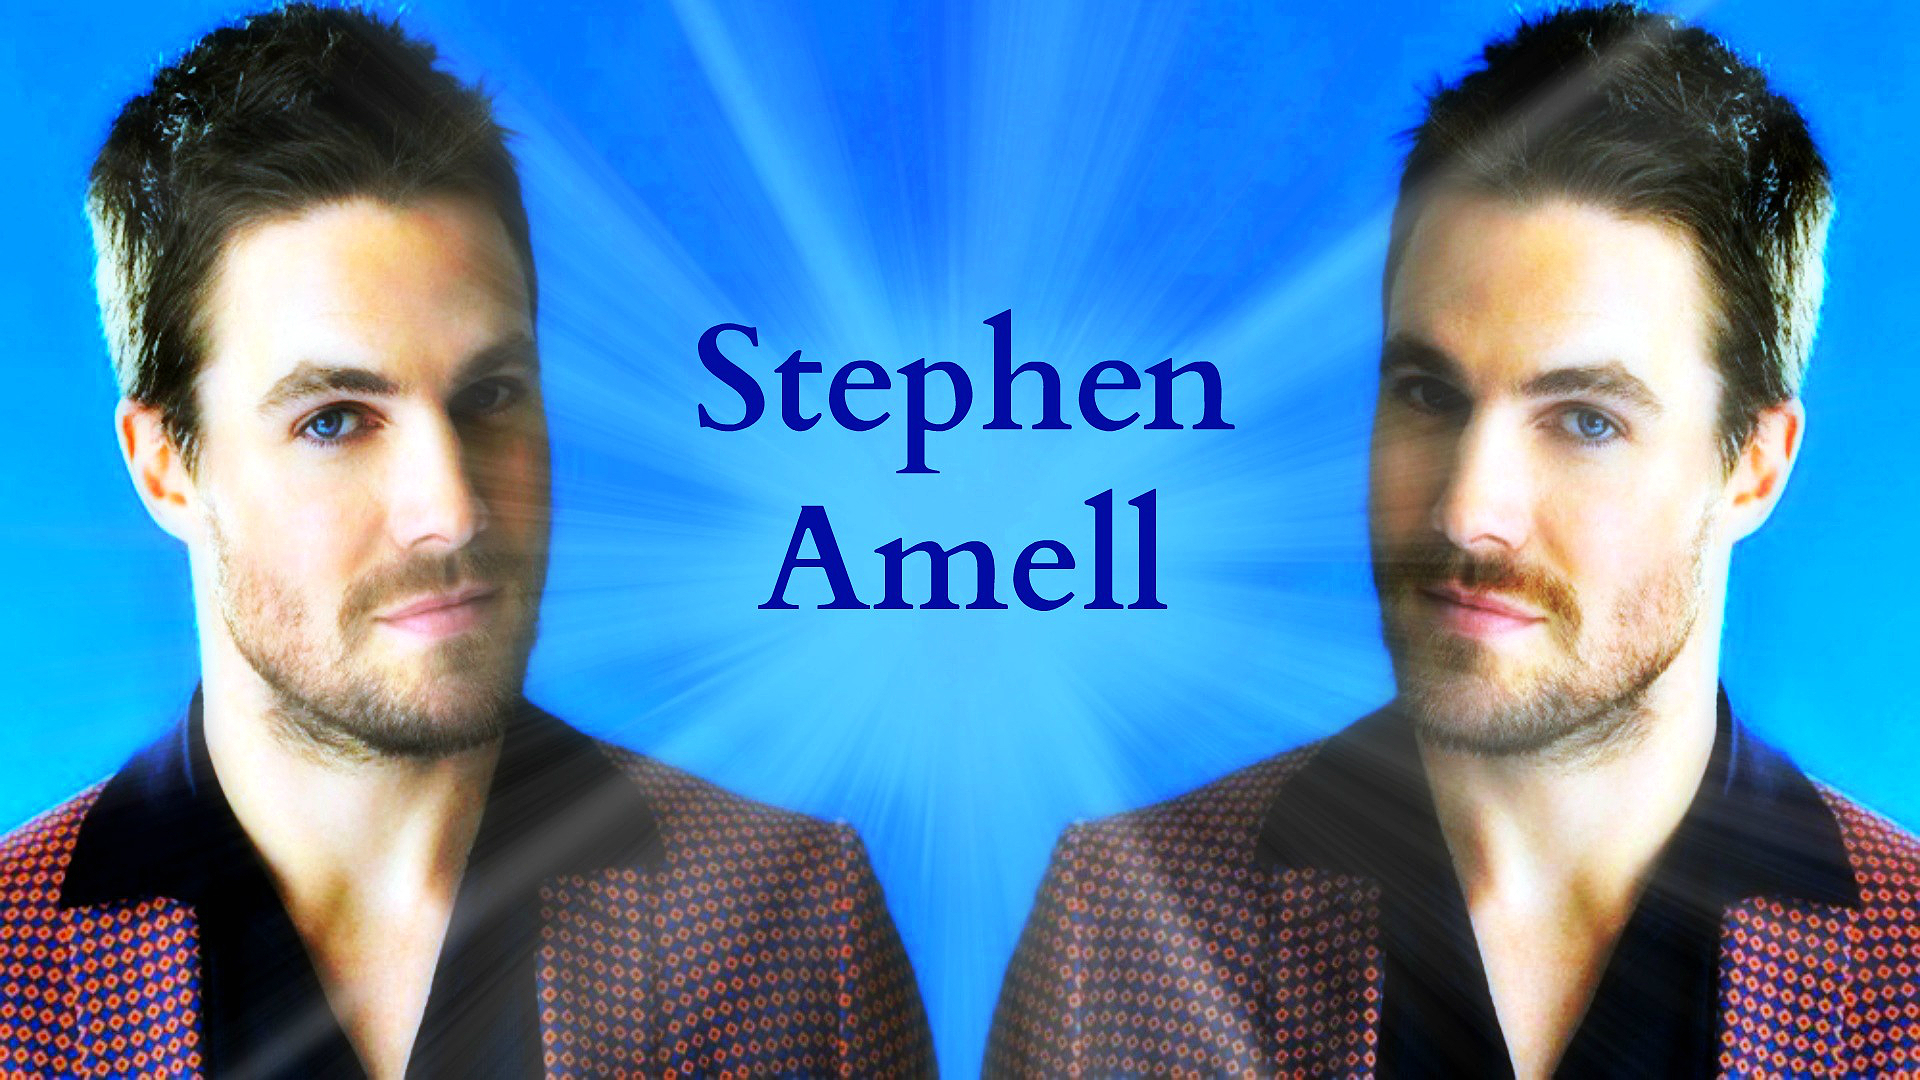 Stephen Amell Wallpaper - Gentleman - HD Wallpaper 